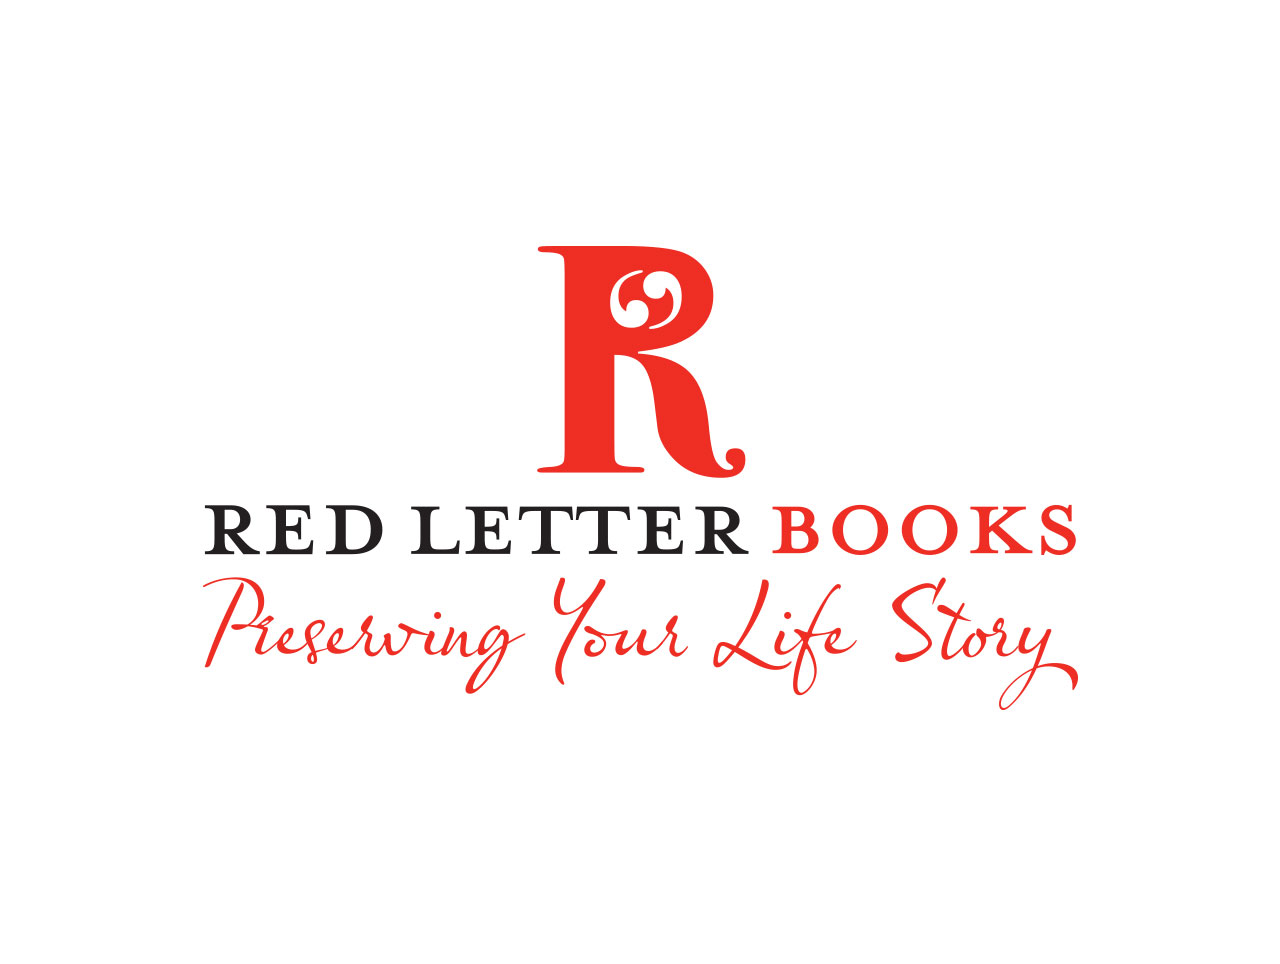 Red Letter Books logo design